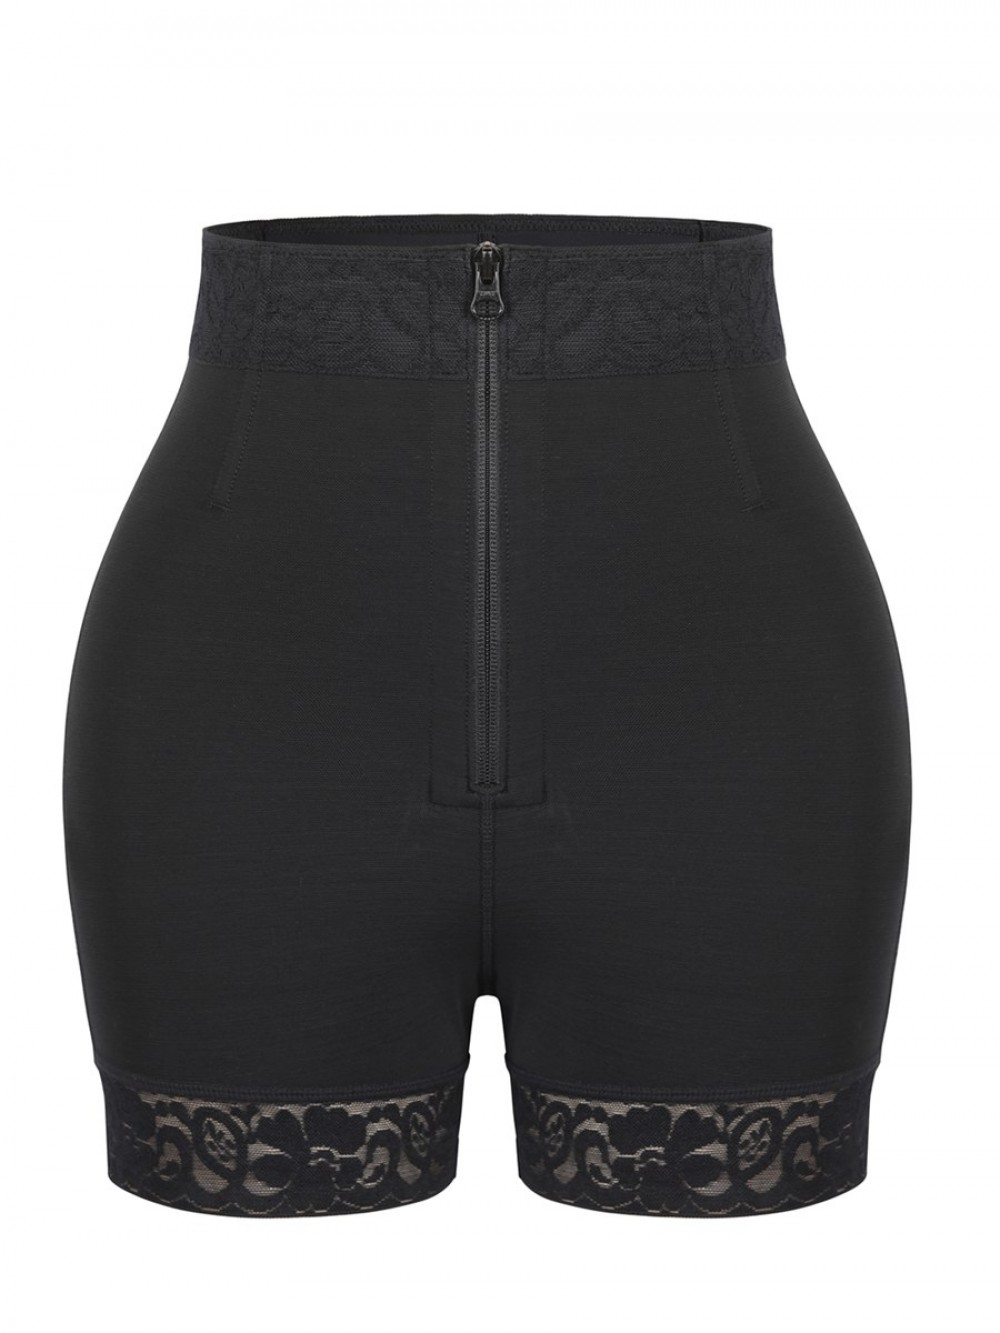 Black Front Zipper Butt Lifter Shorts High Waist Tummy Control